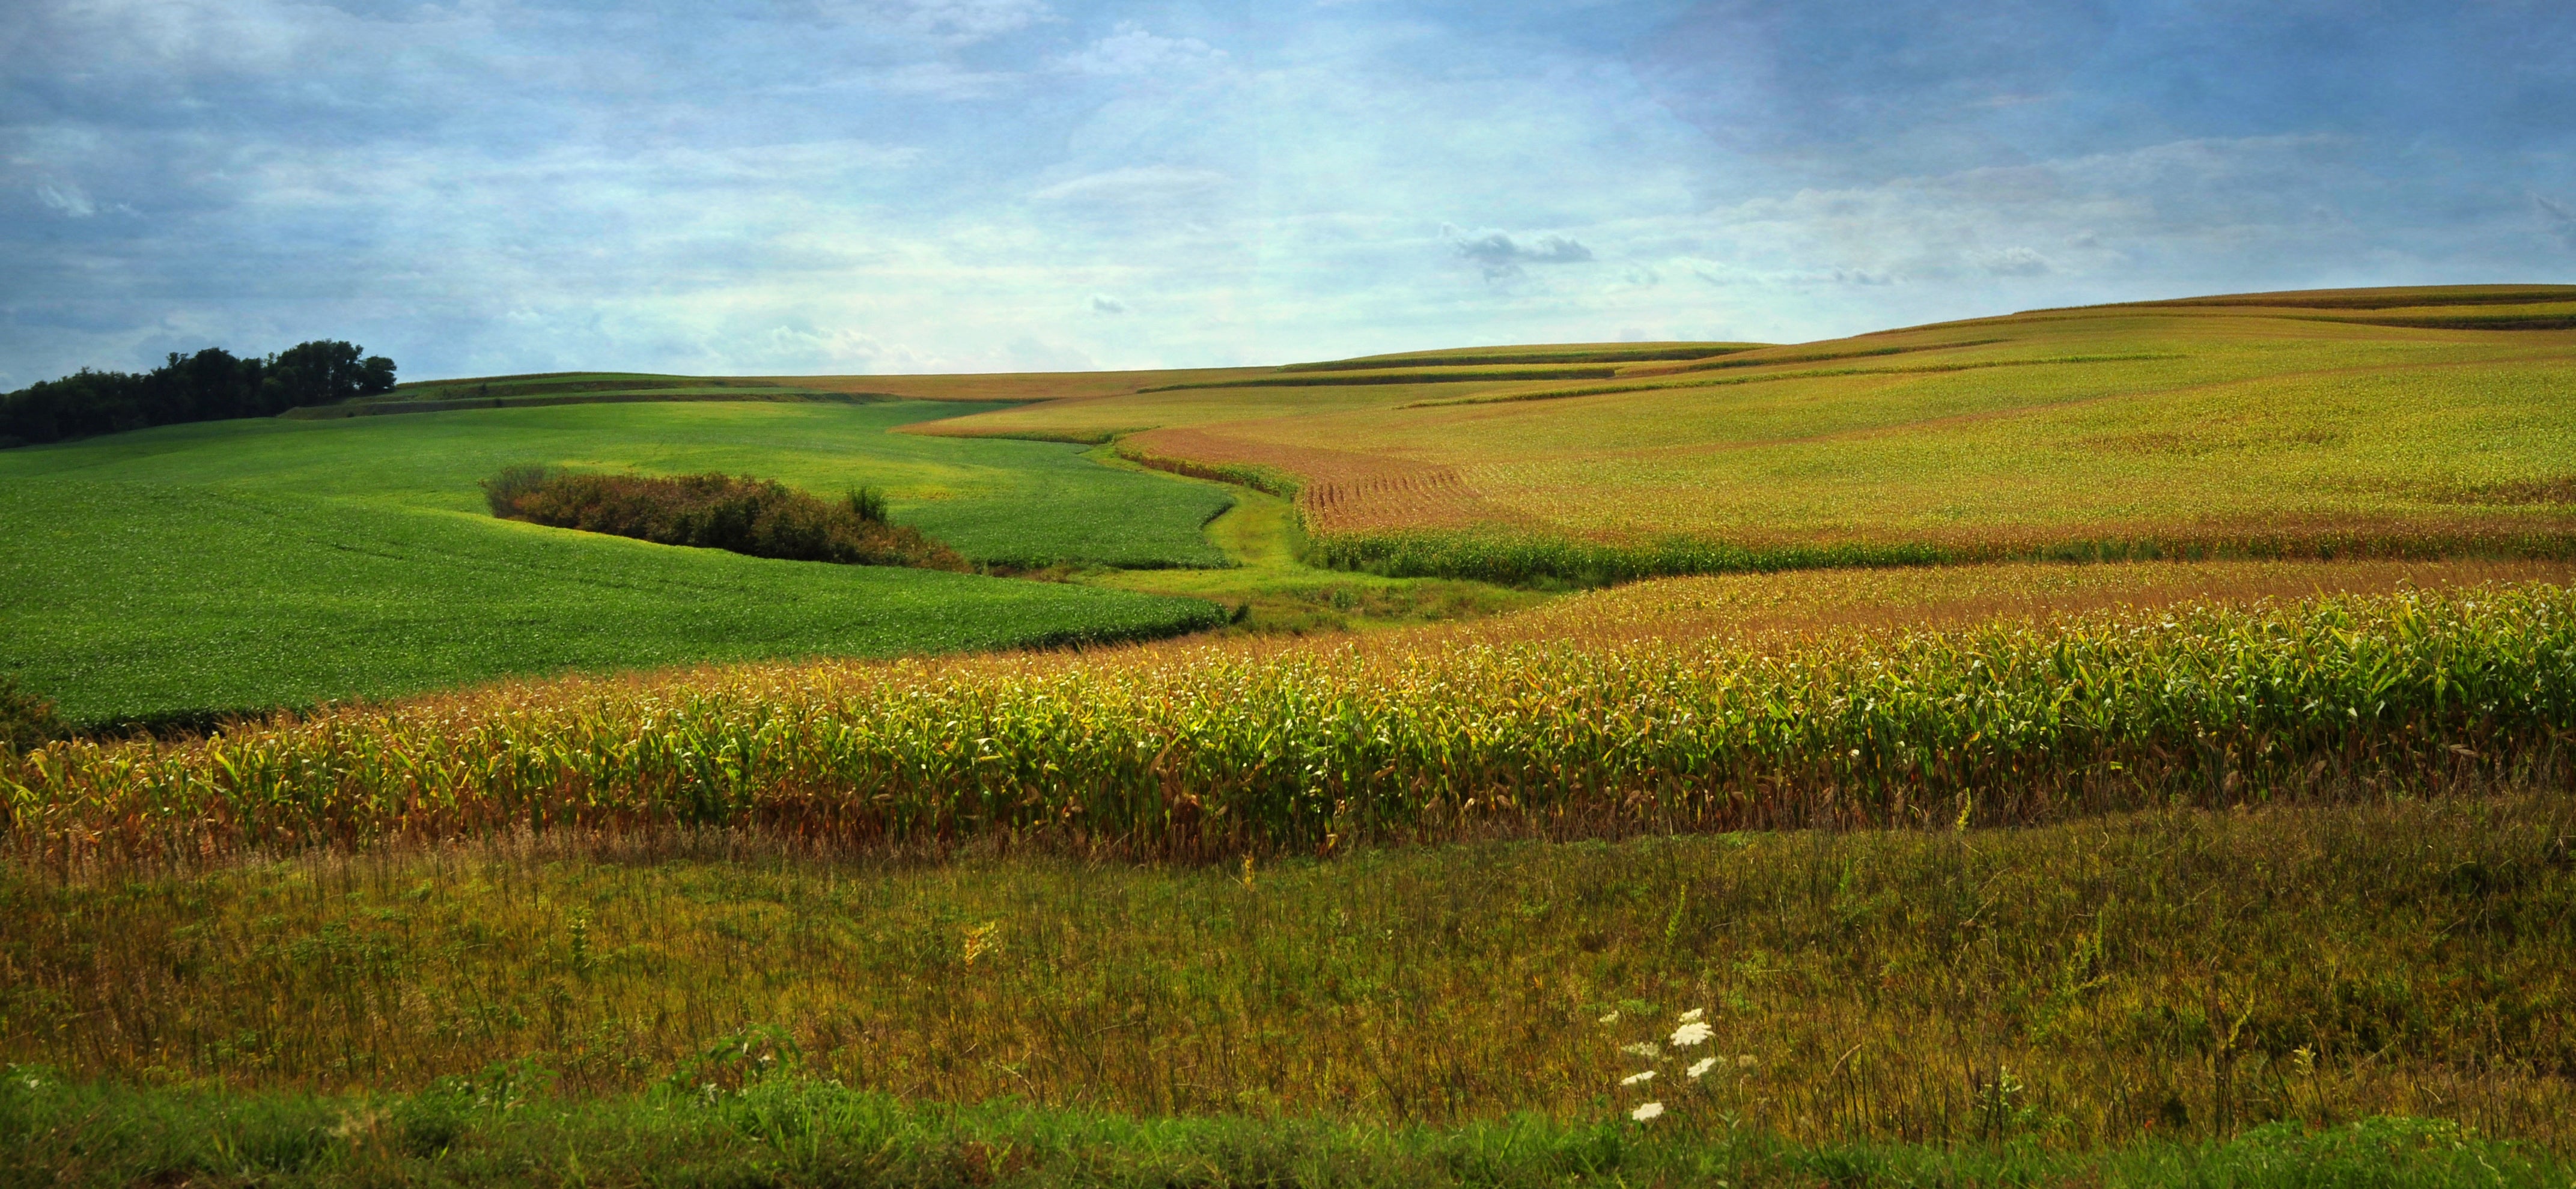 Iowa soybean field